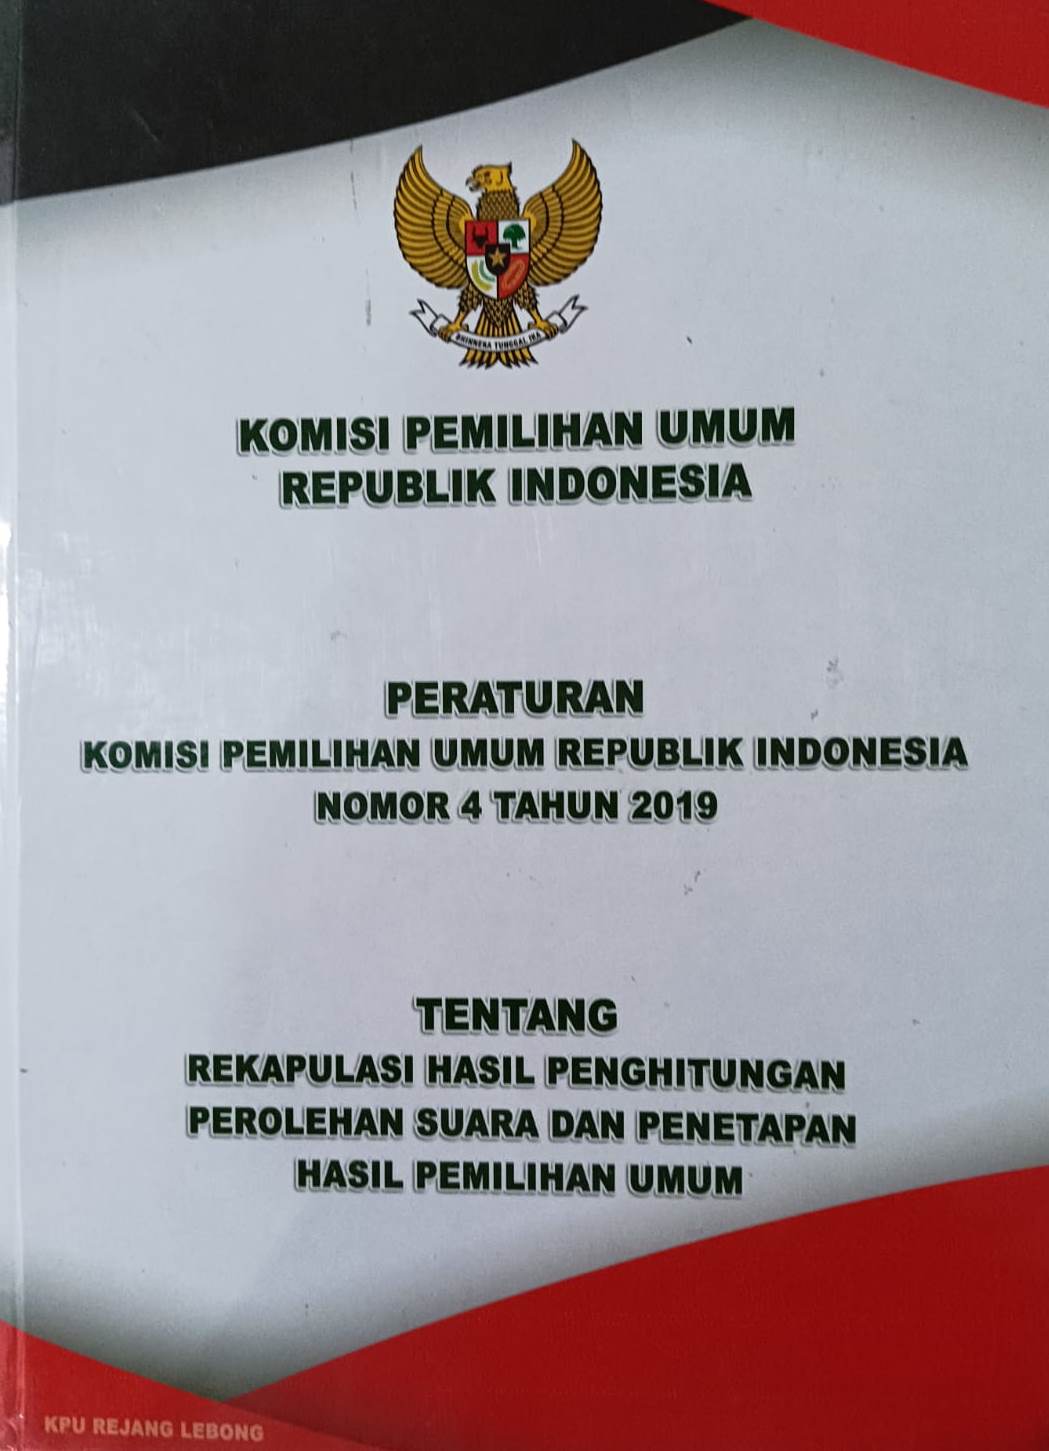 Peraturan Komisi Pemilihan Umum Republik Indonesia Nomor 4 Tahun 2019